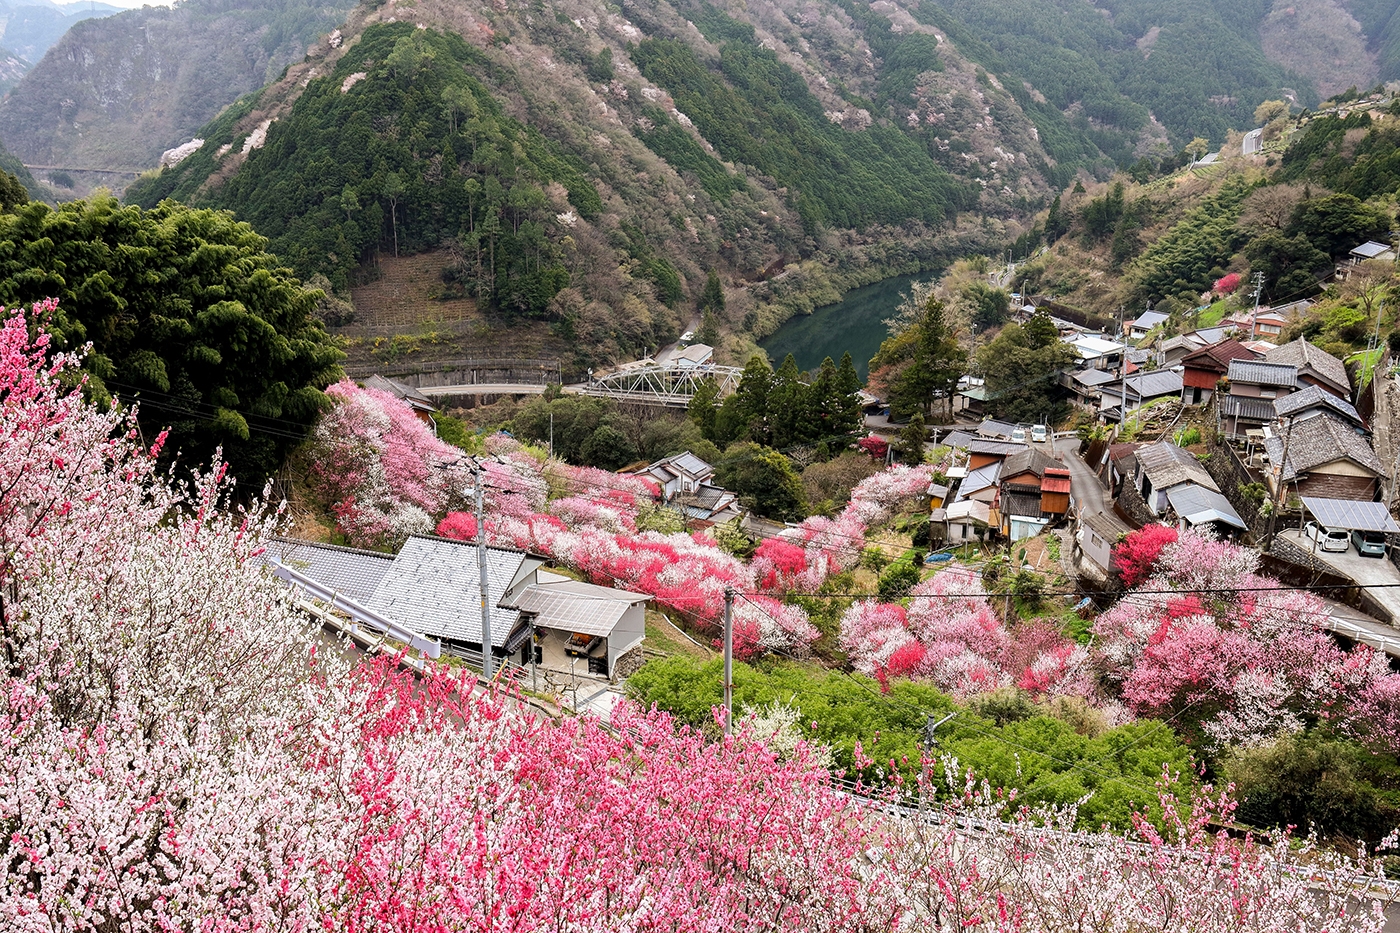 Le quartier Teramura du bourg de Niyodogawa, dans la préfecture de Kōchi, offre un incroyable spectacle de couleurs printanières